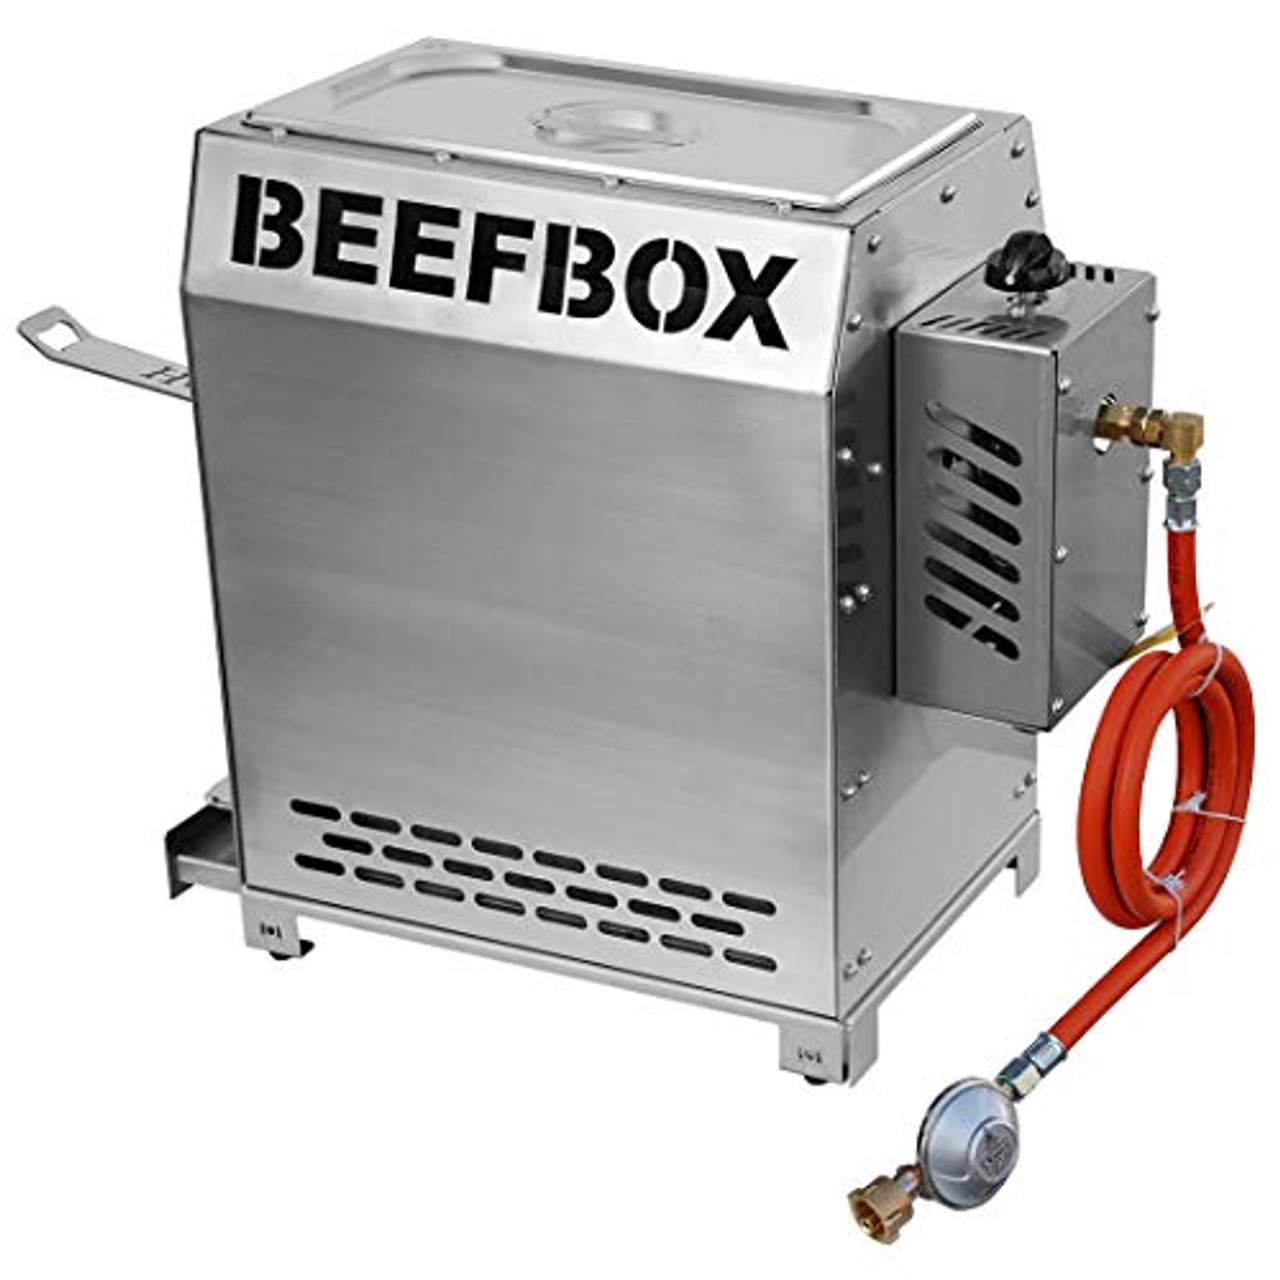 Beefbox PRO 2.0 Elektro-Zündung 850 Grad Oberhitze Grill